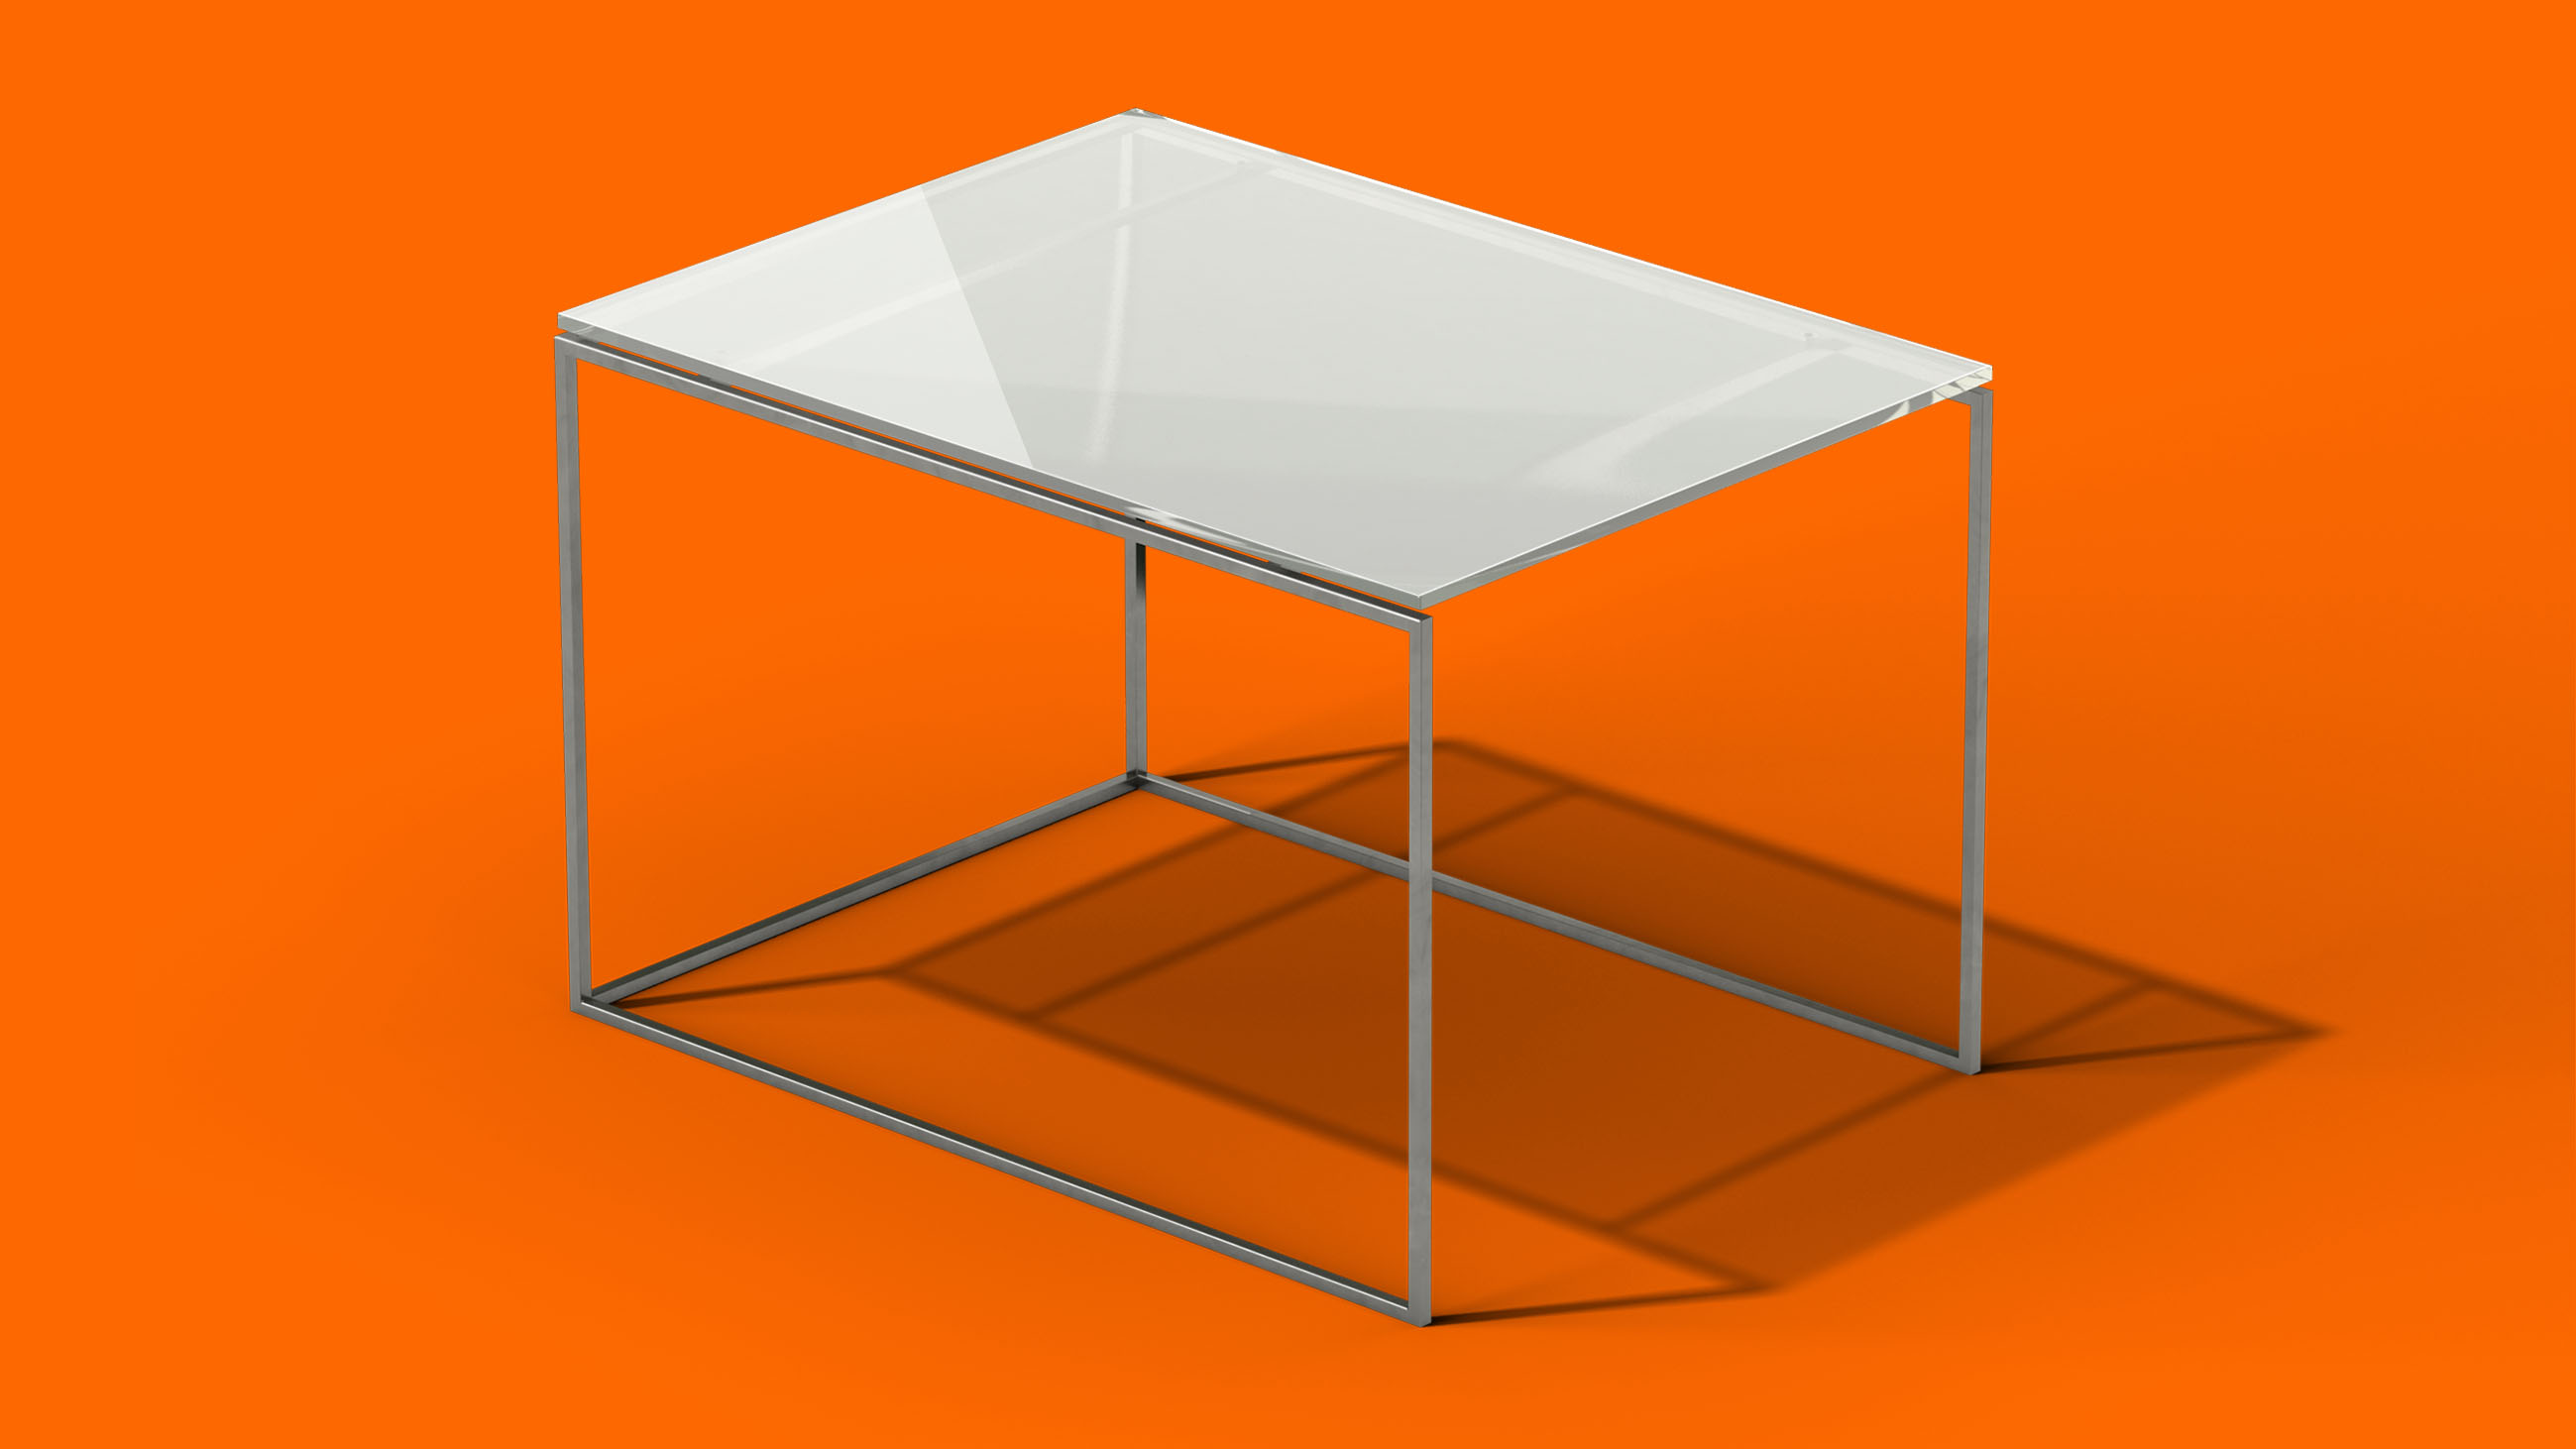 geänderter Tisch im dreidimensionalen raum orange